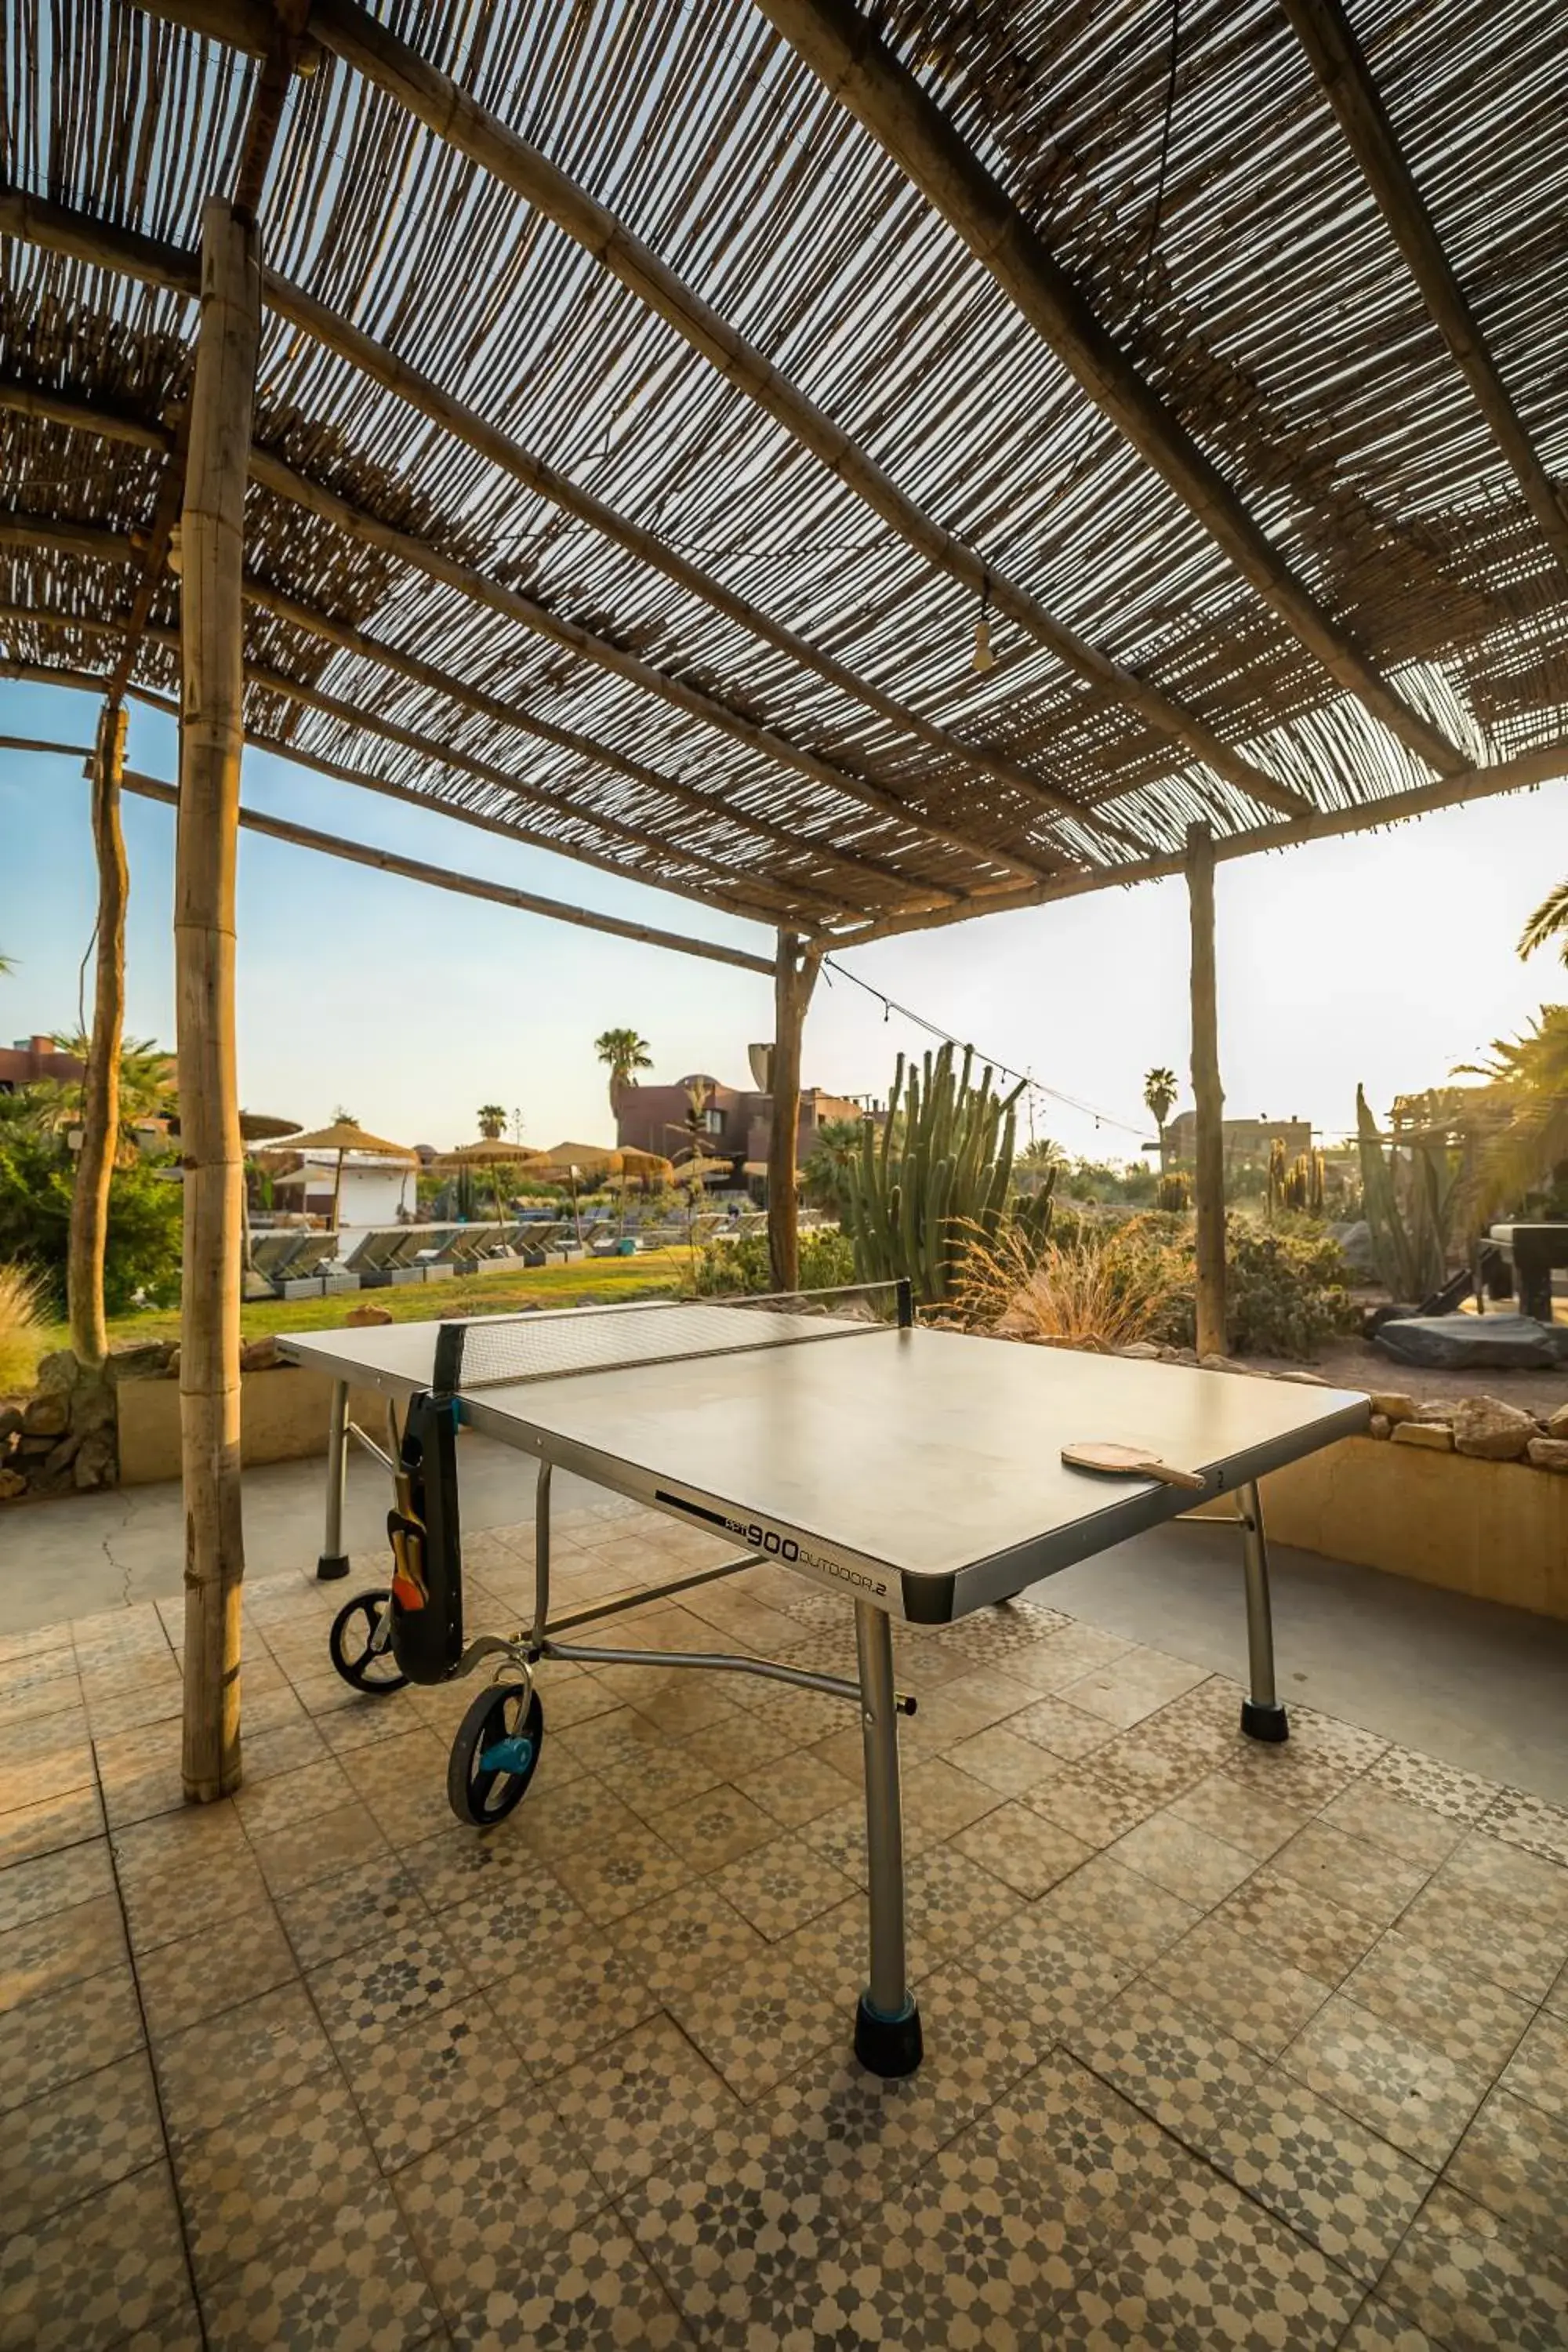 Table Tennis in Fellah Hotel